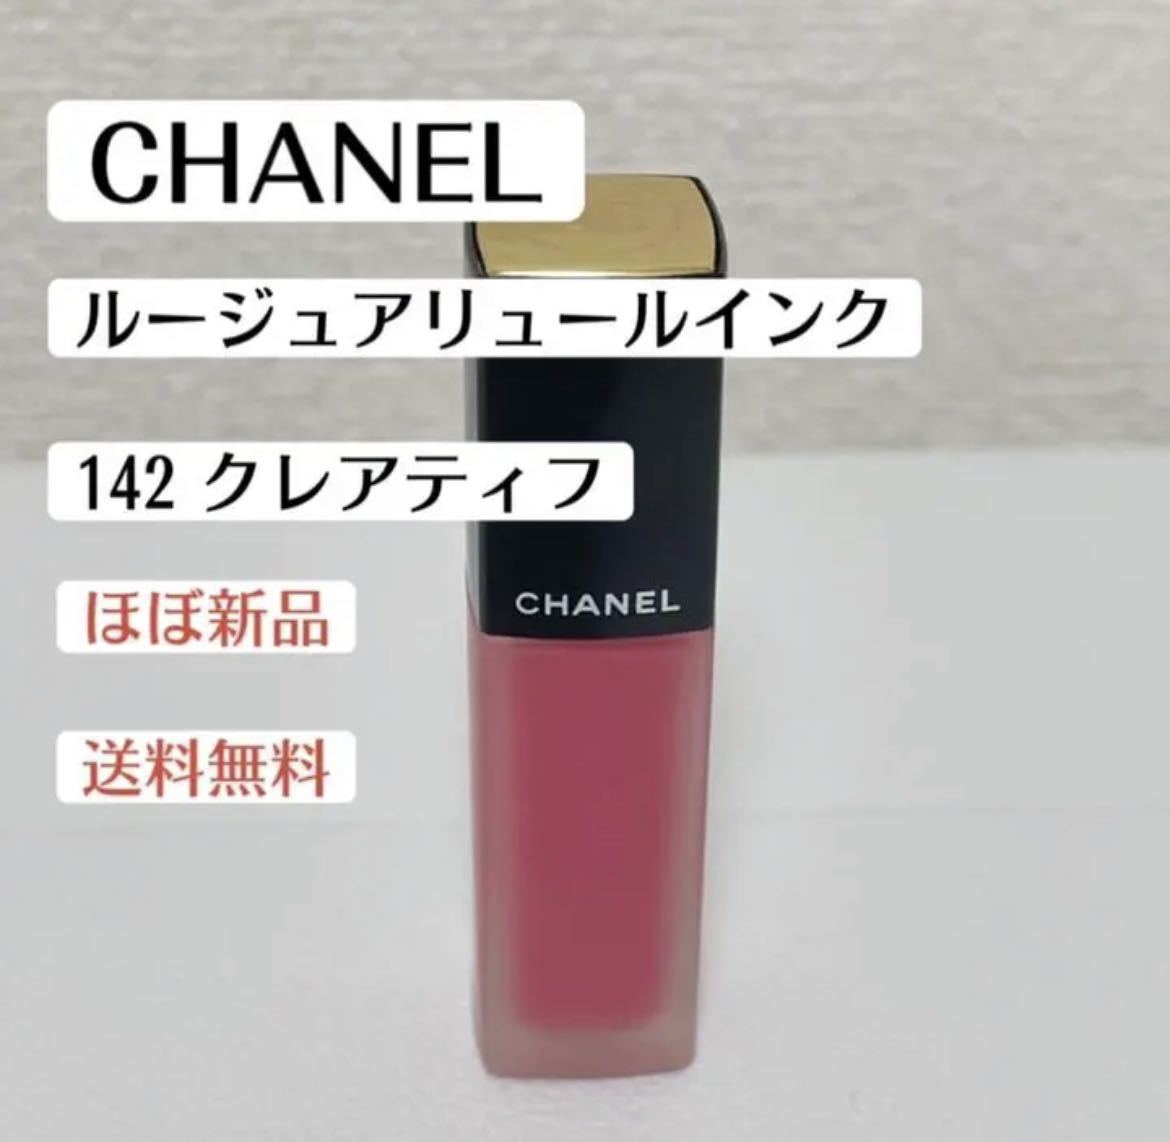  почти новый товар Chanel CHANEL rouge Allure чернила 142 Crea tif помада tin поездка tepakos высокий бренд 